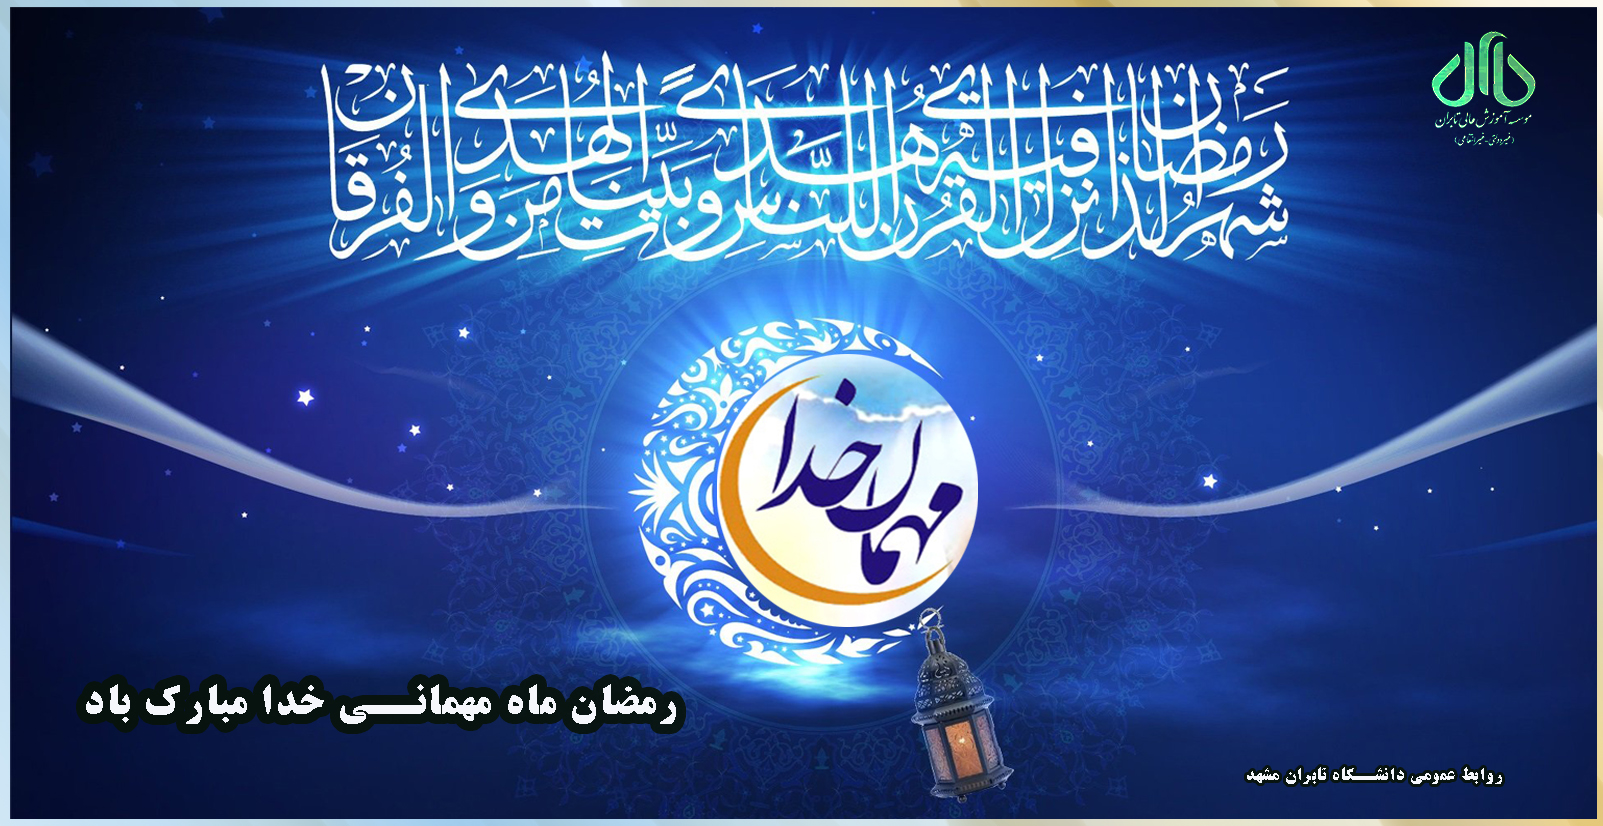 لول ماه پر خیر و برکت رمضان مبارک باد